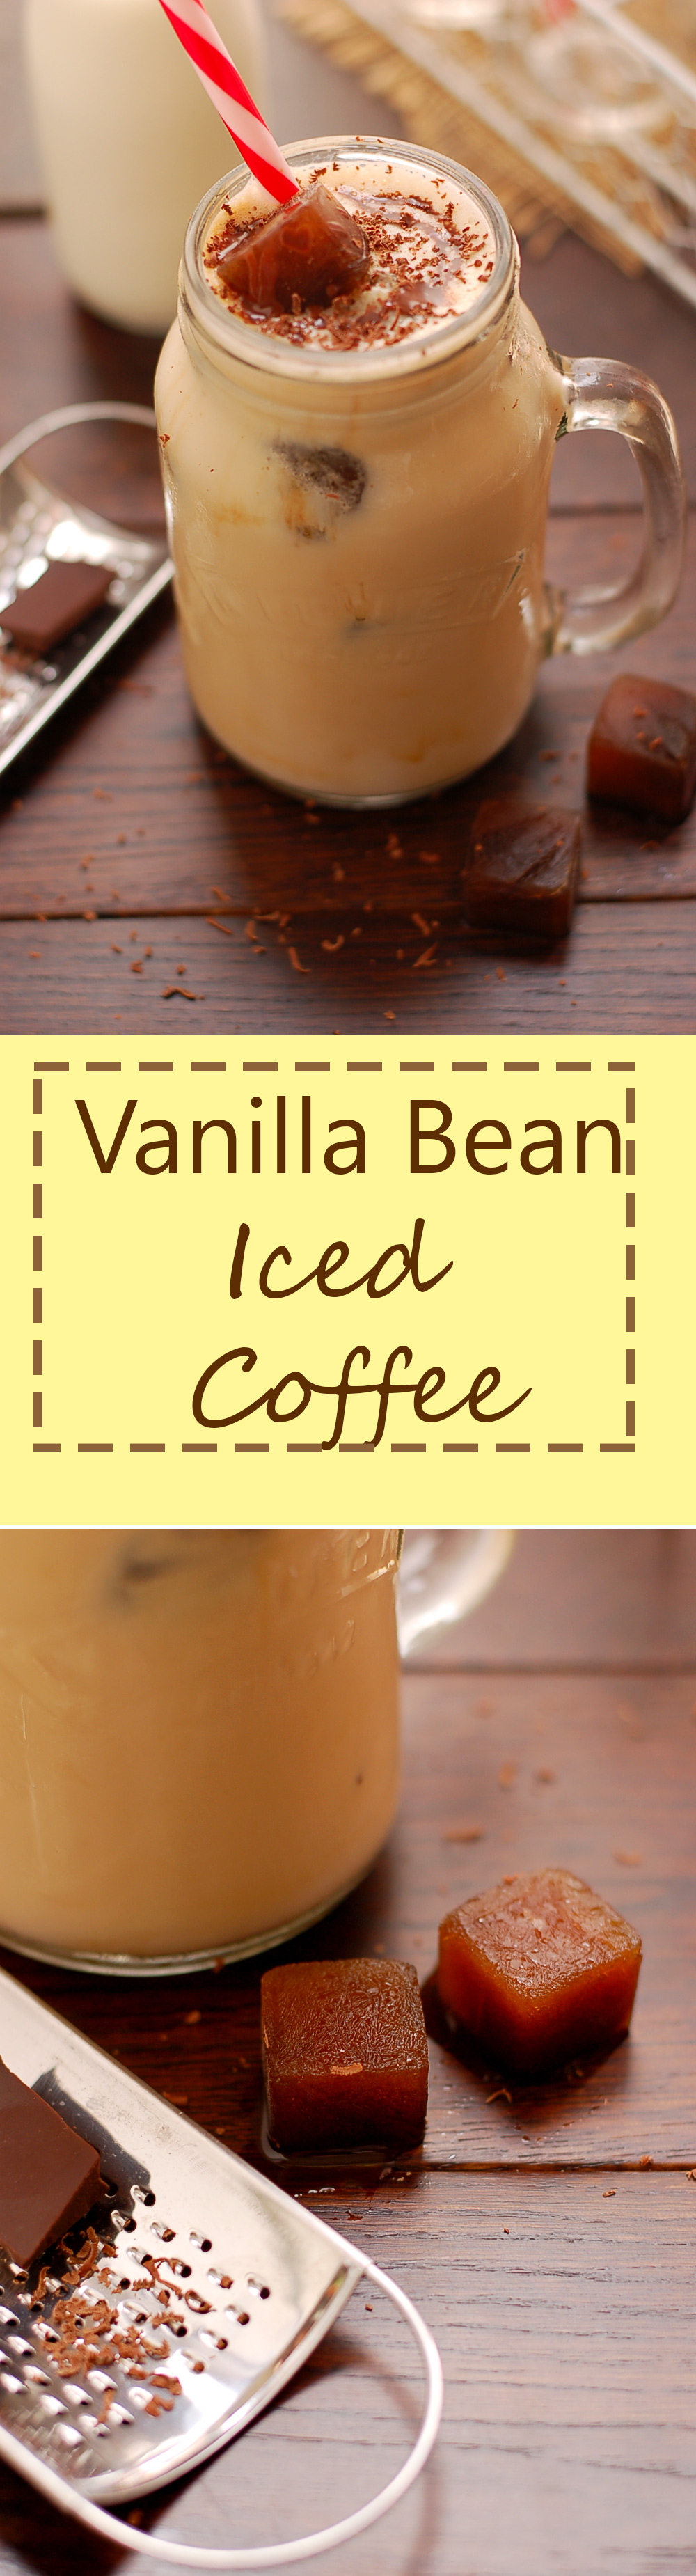 Yummy Vanilla Bean Iced Coffee. Sie werden sich in ihn verlieben!